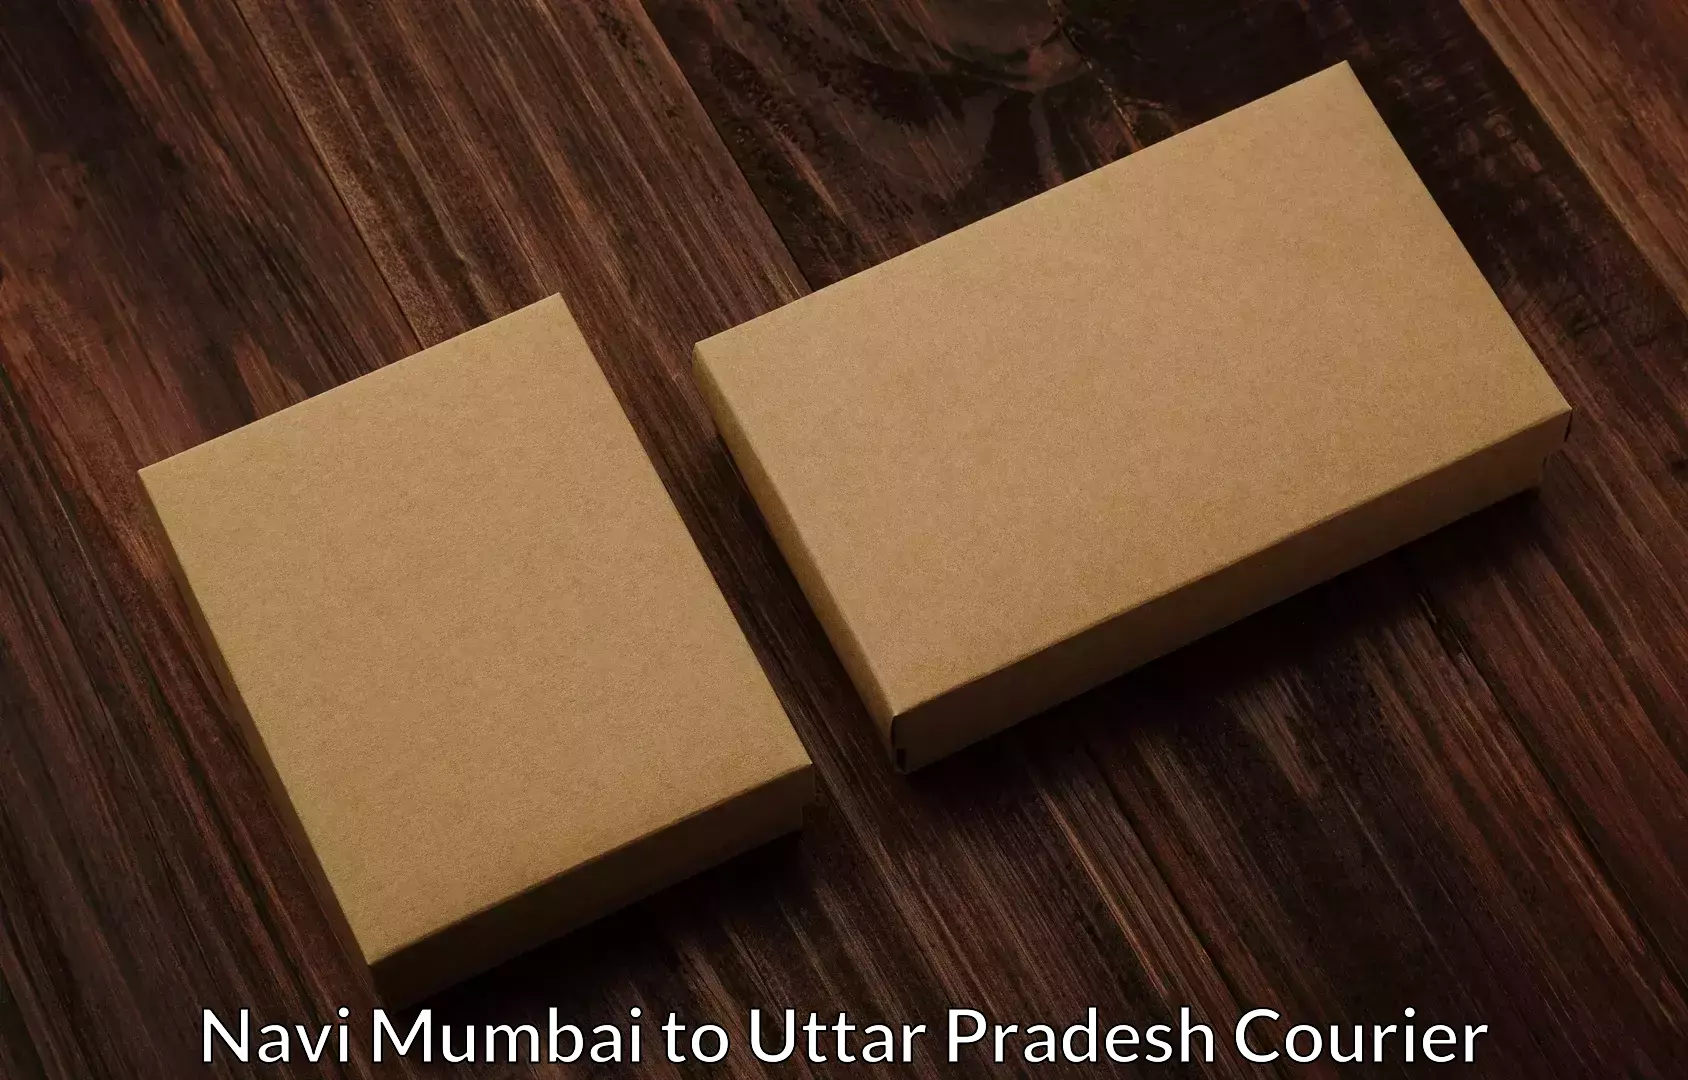 Personalized moving service Navi Mumbai to Uttar Pradesh